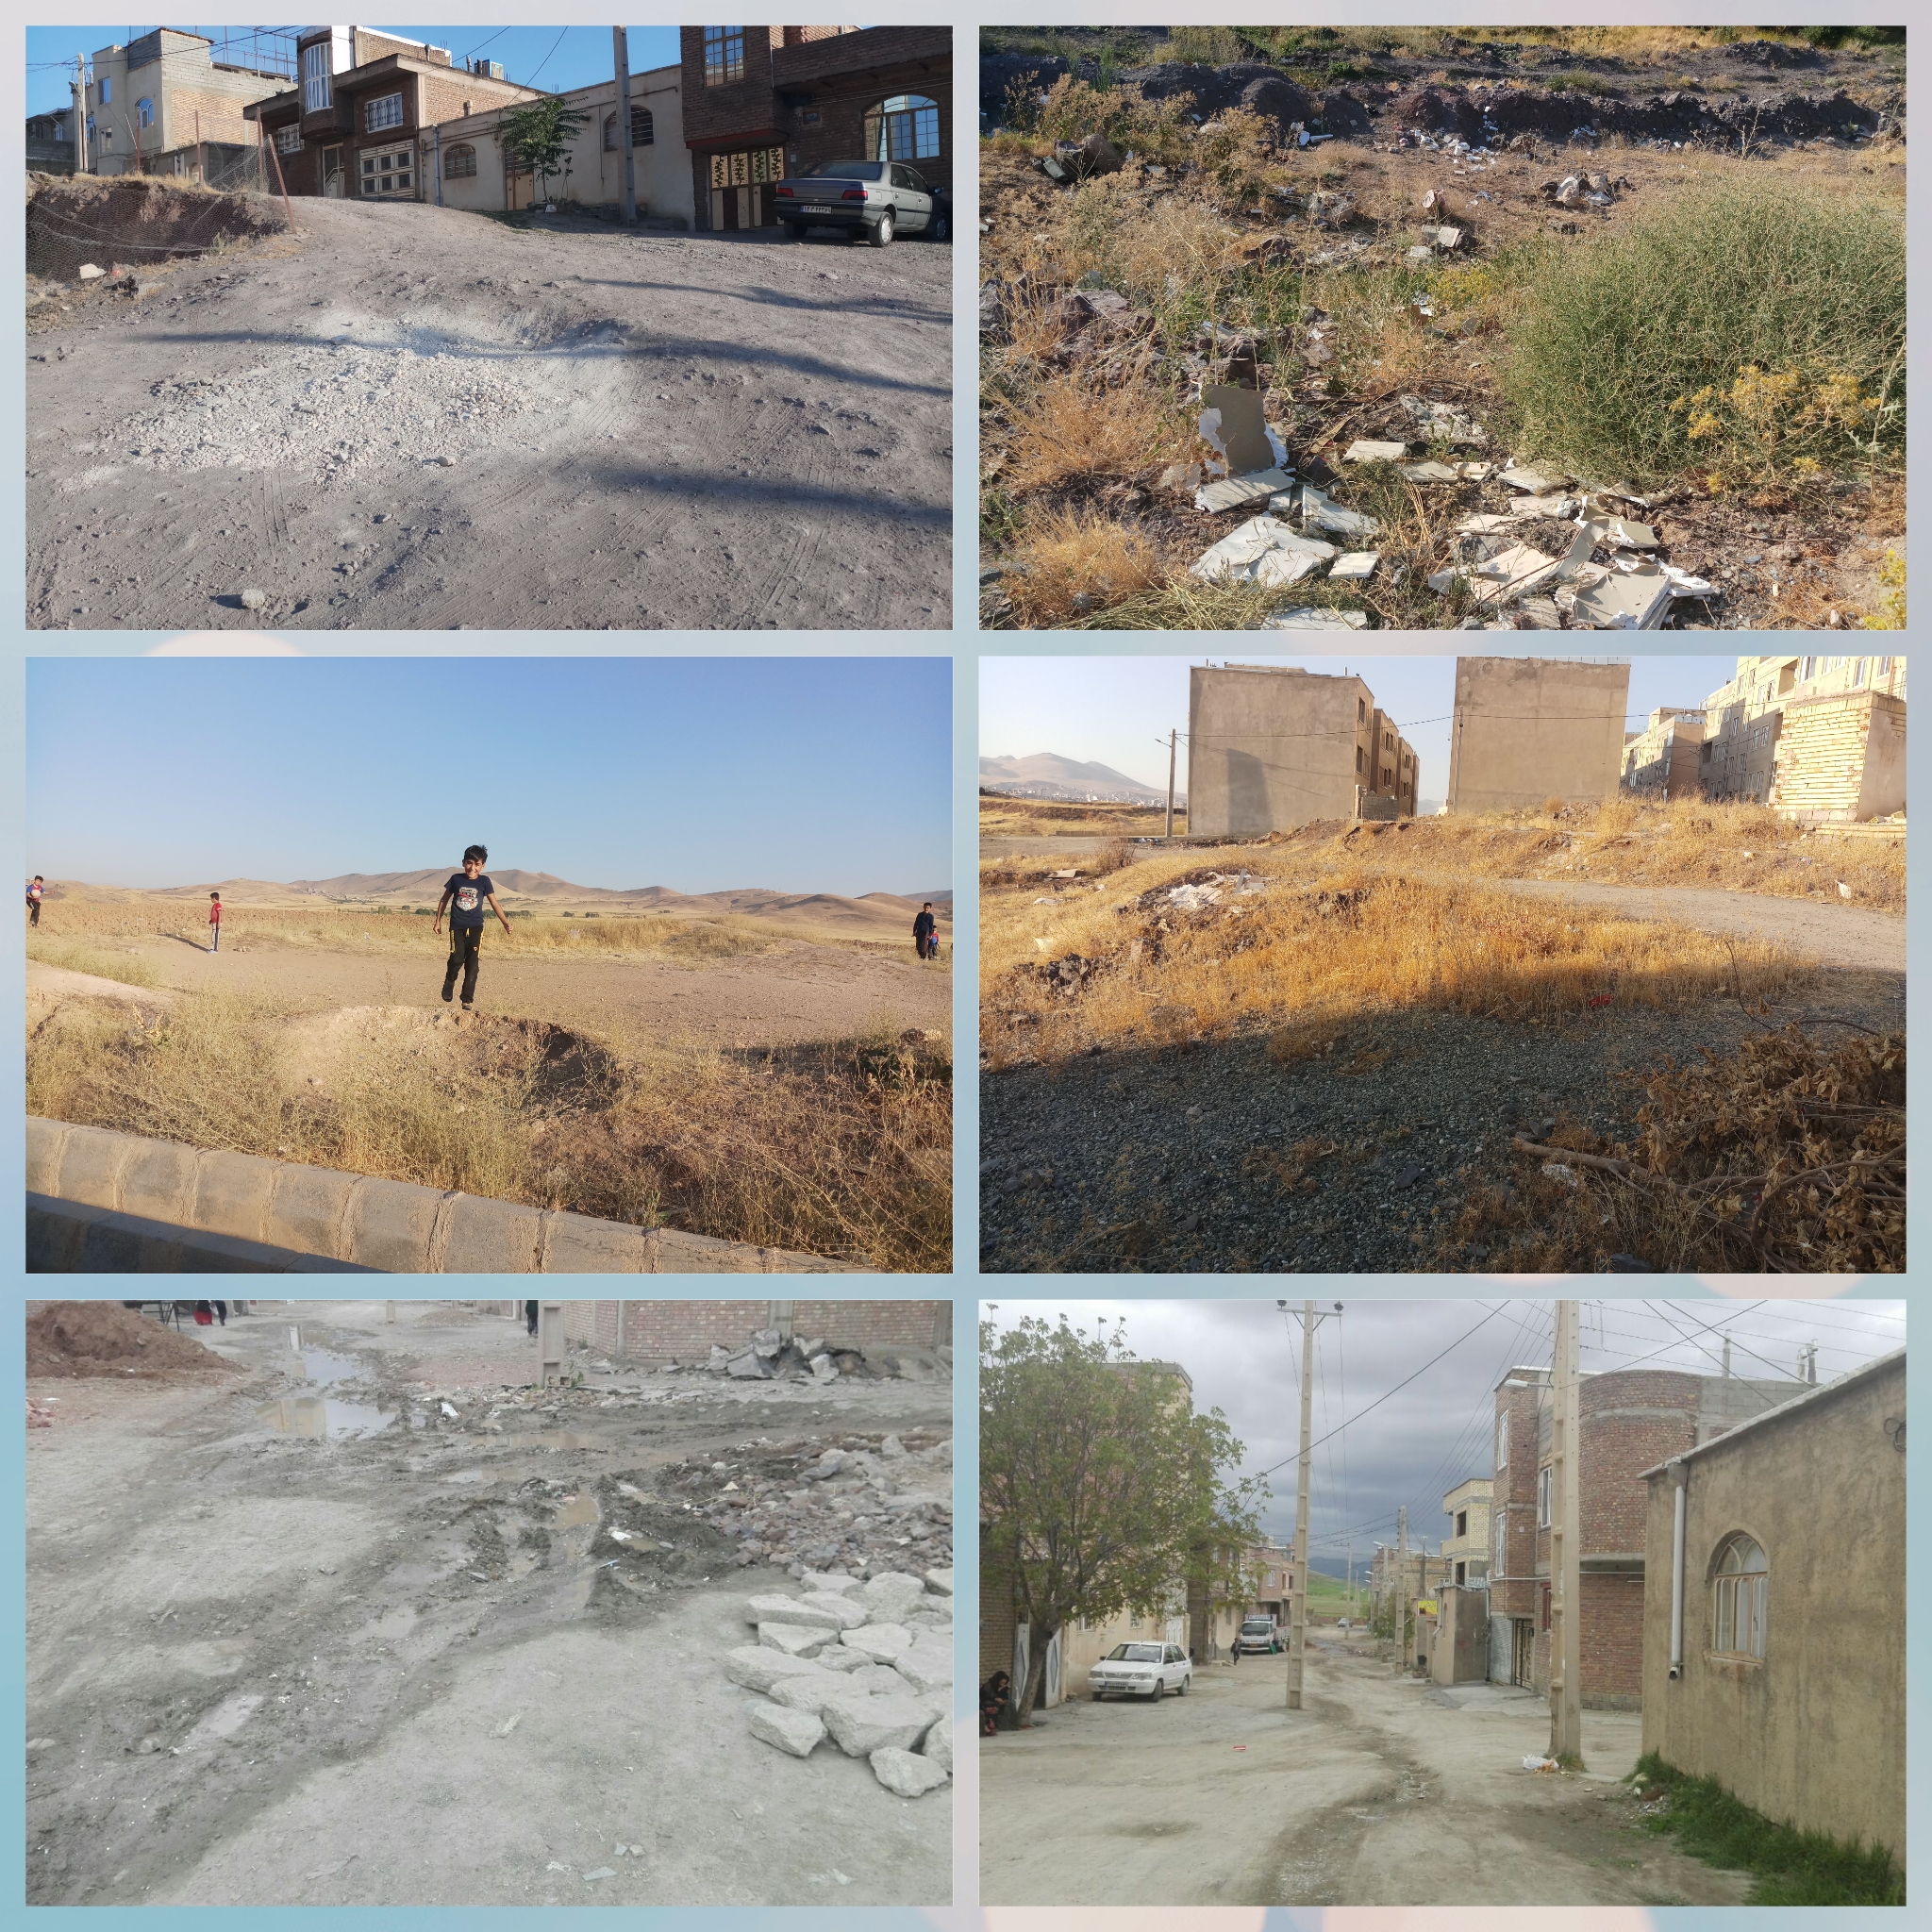 قه¬وه¬خ؛ محله حاشیه ای بی امکانات و در حاشیه مانده + تصاویر